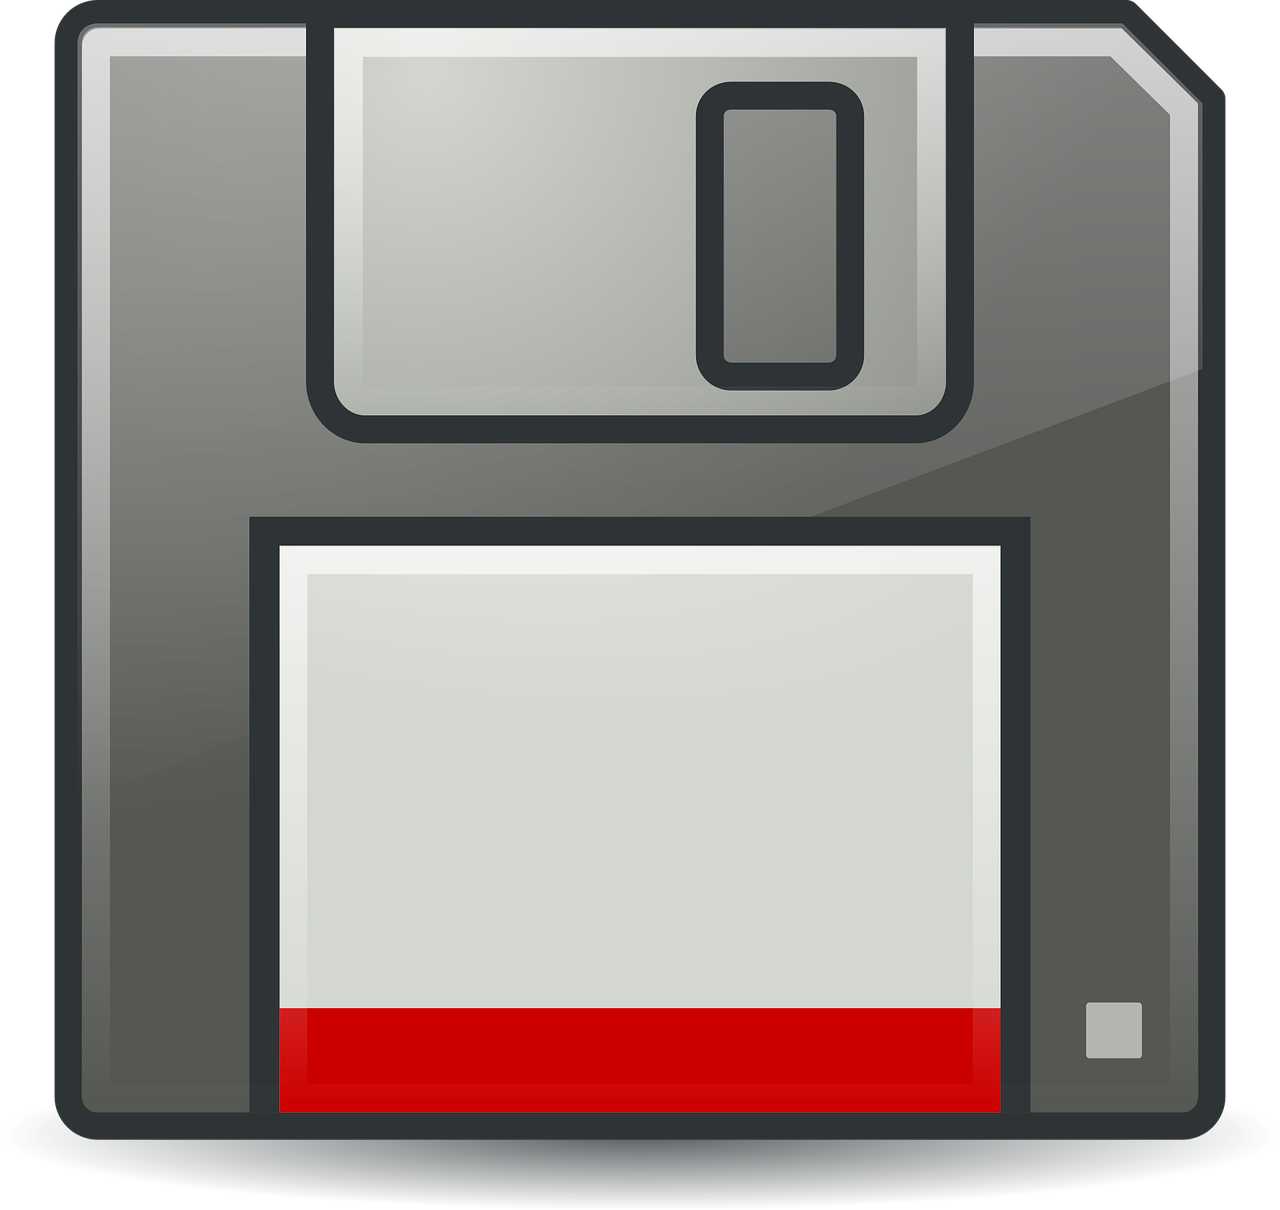 floppy icons rodentia icons free photo